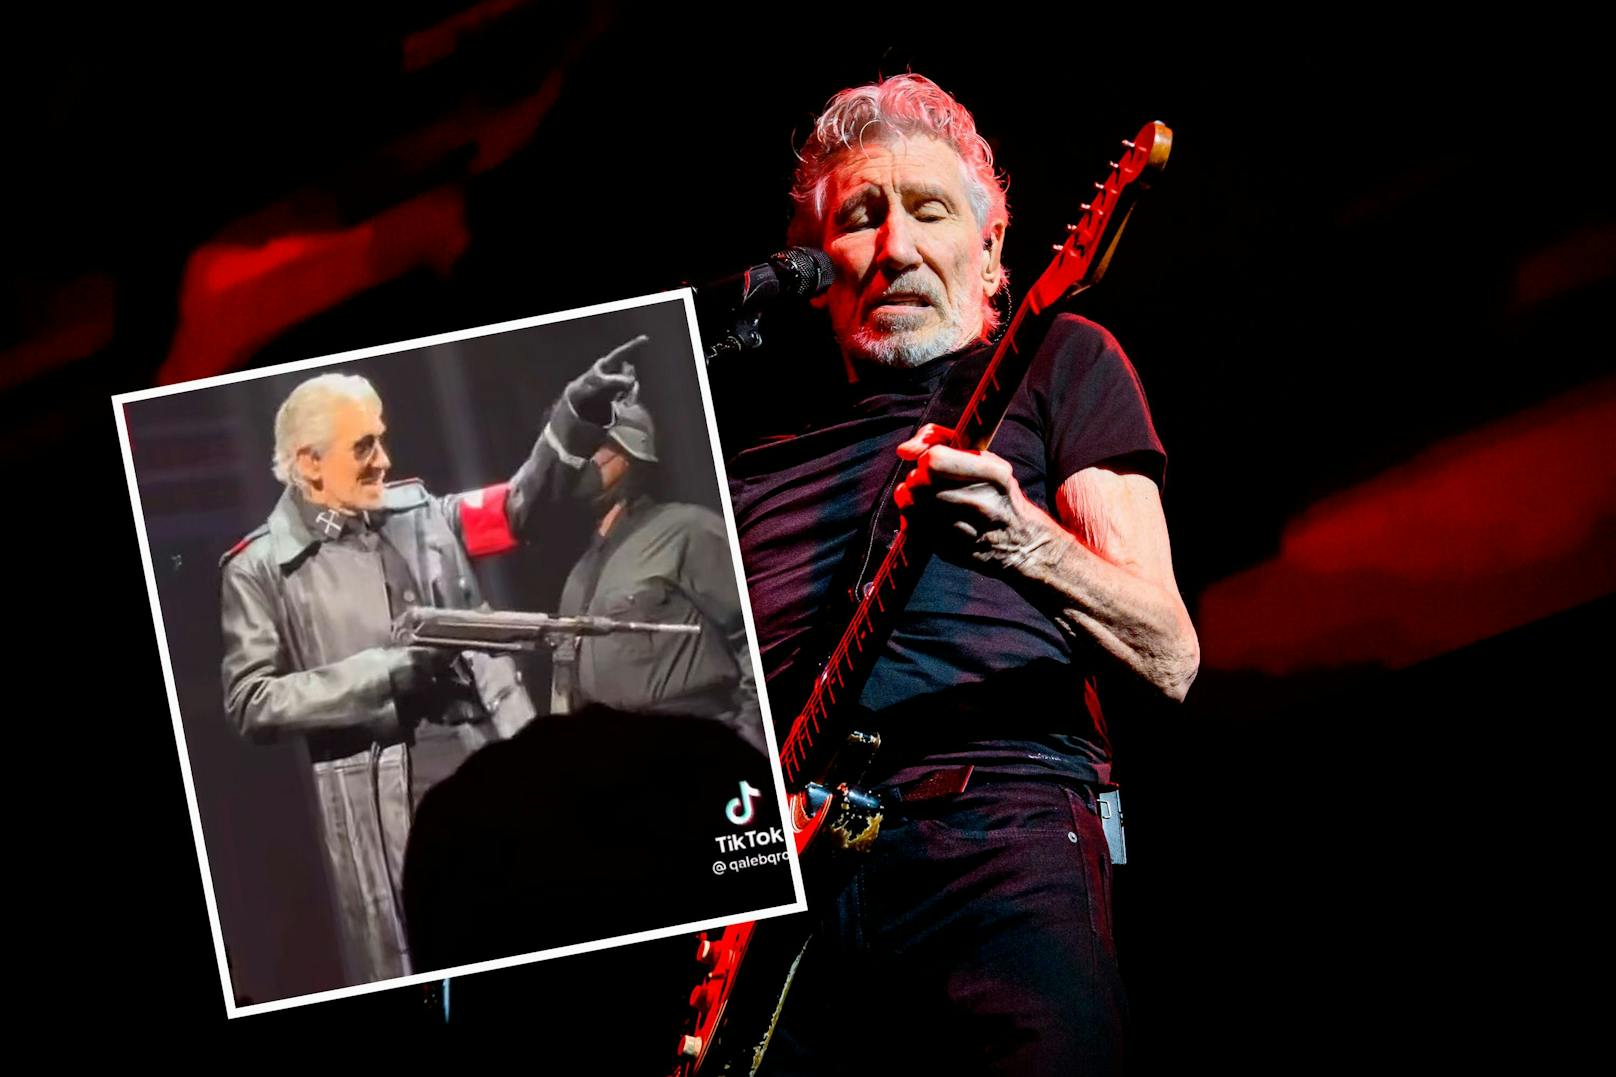 Mit seinem Auftritt sorgte Roger Waters für einen handfesten Eklat.